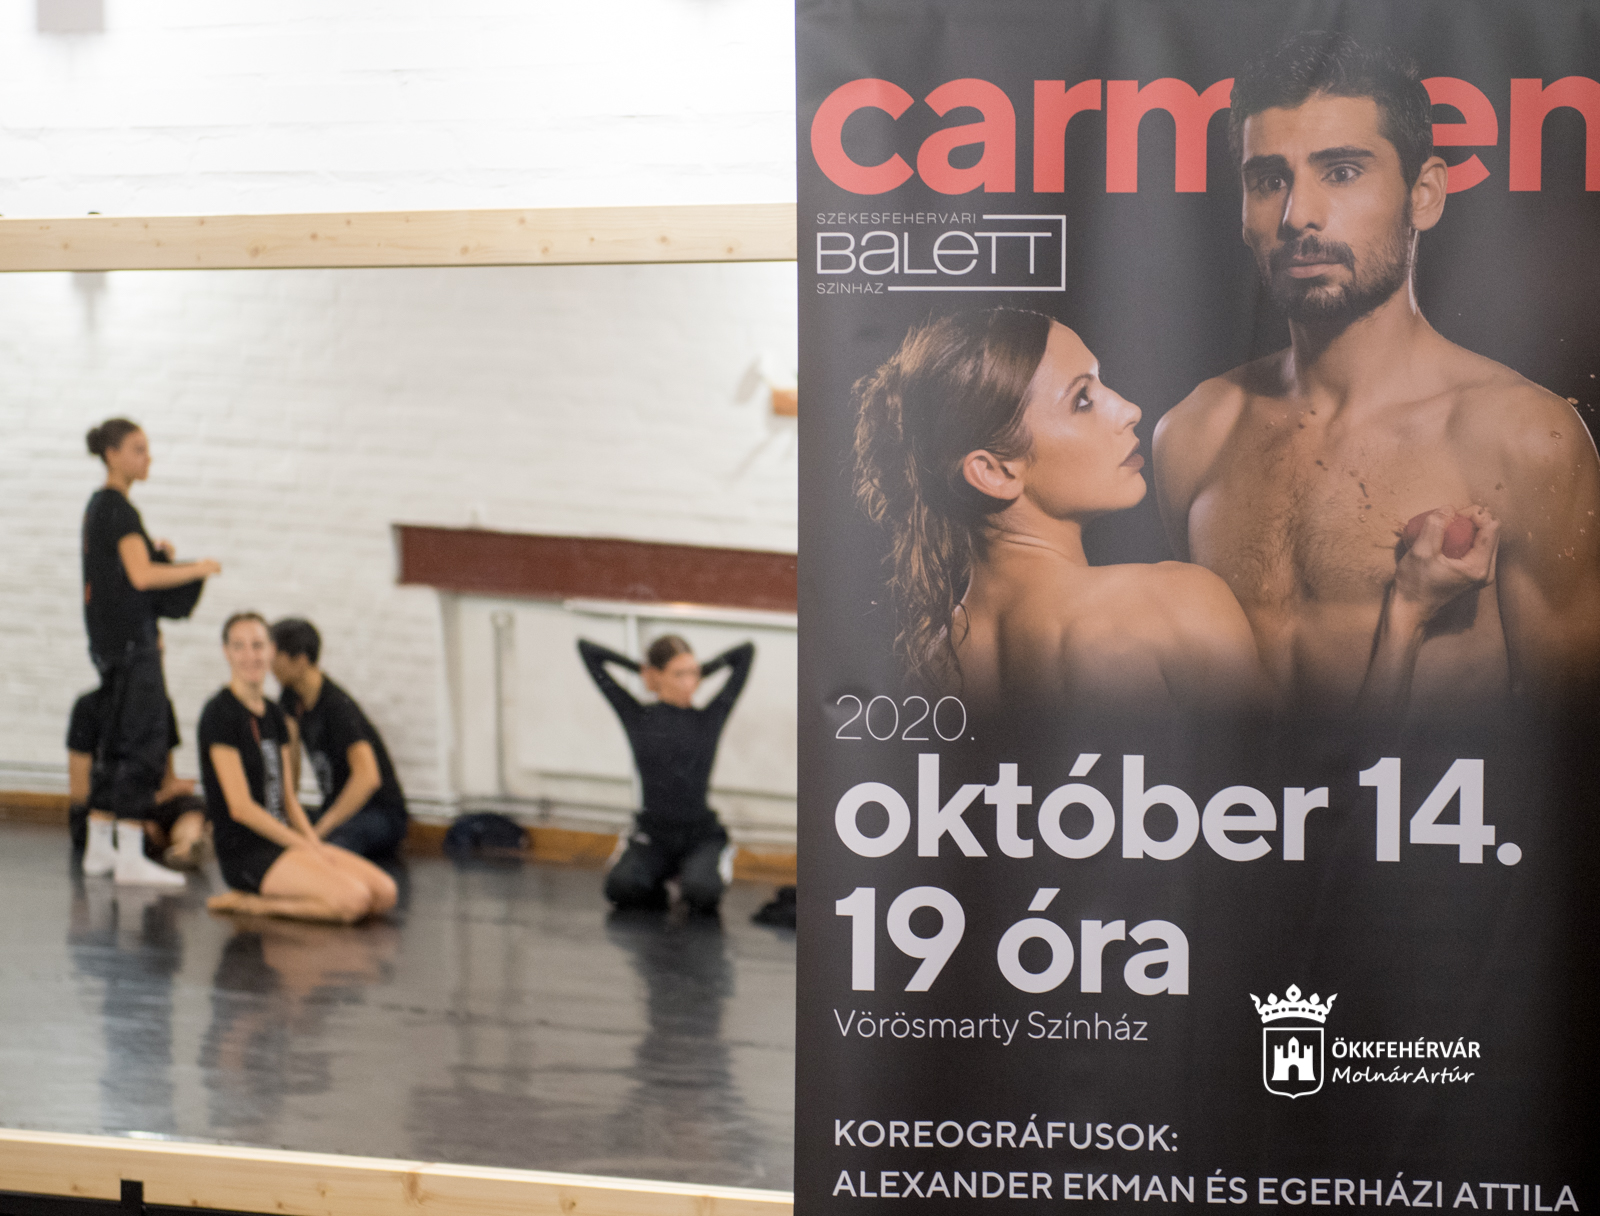 Premier a balett színházban - október 14-én mutatják be a Carmen című estet